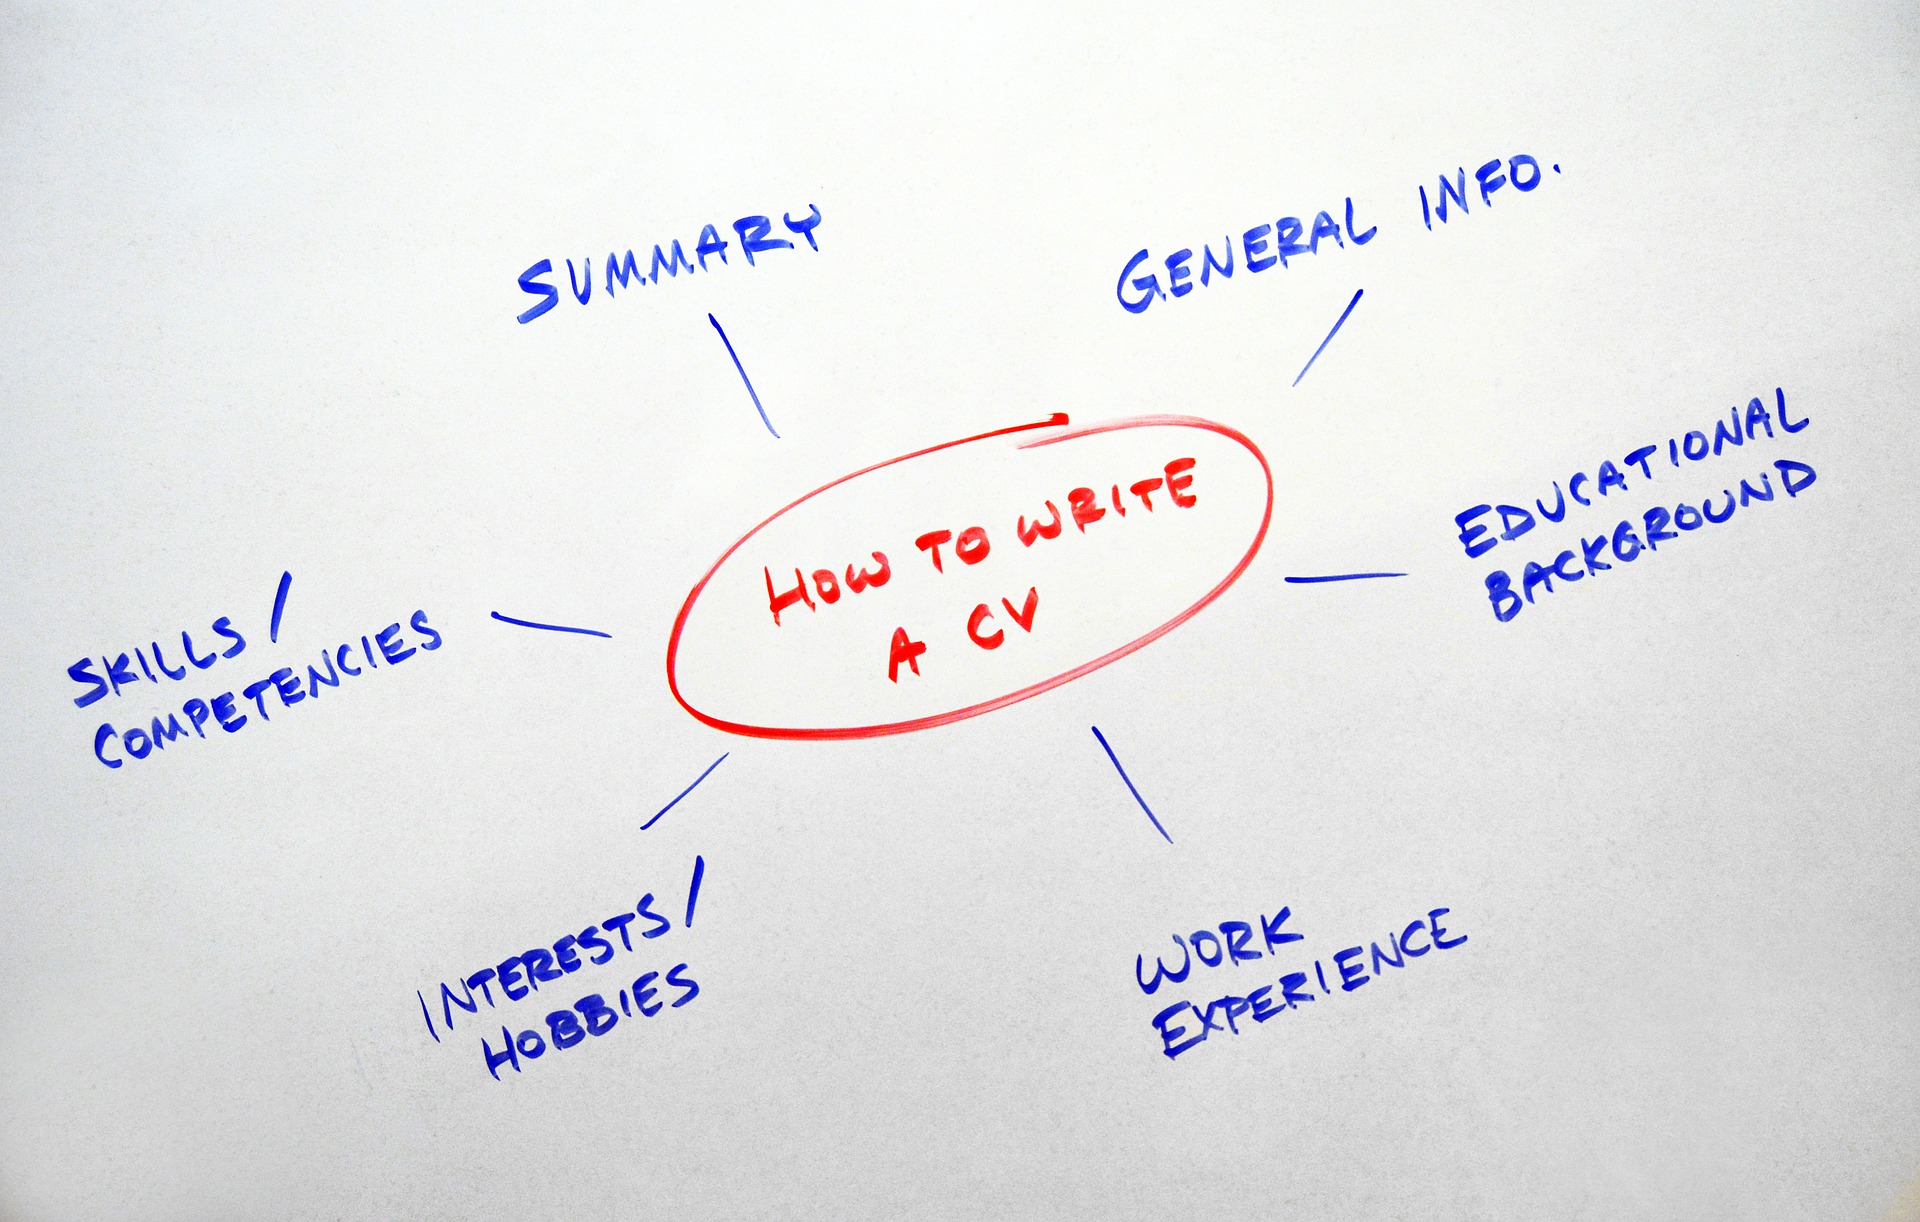 How to Write a CV